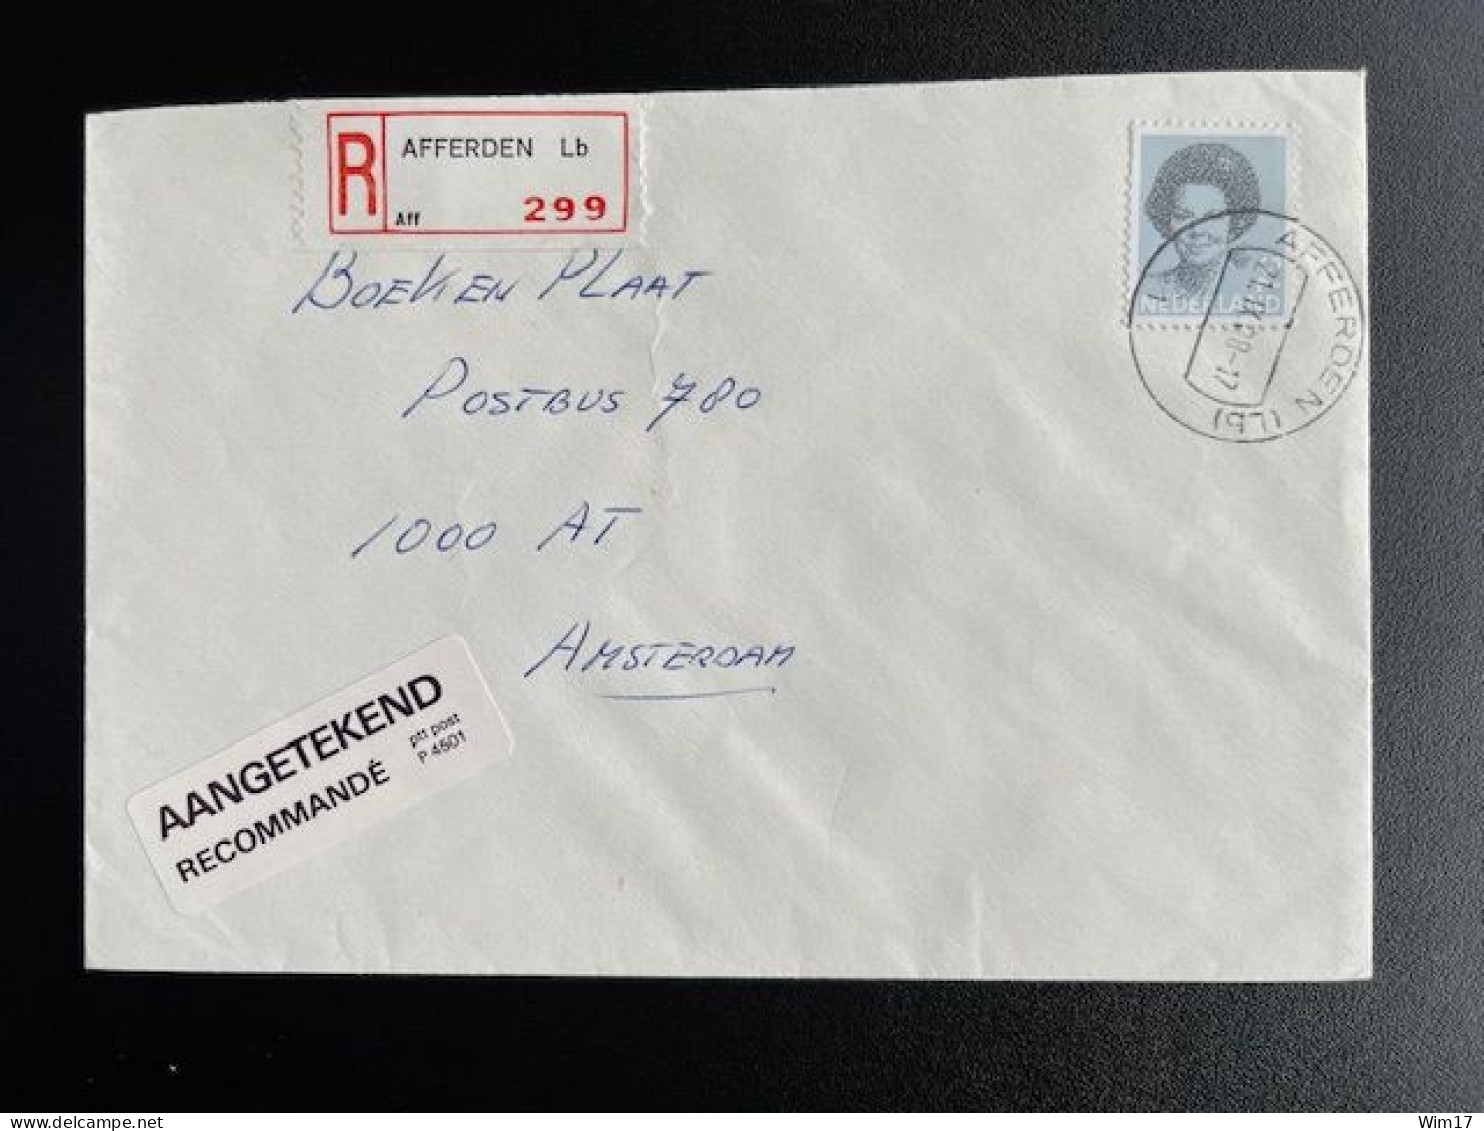 NETHERLANDS 1988 REGISTERED LETTER AFFERDEN (LB) TO AMSTERDAM 21-09-1988 NEDERLAND AANGETEKEND - Briefe U. Dokumente